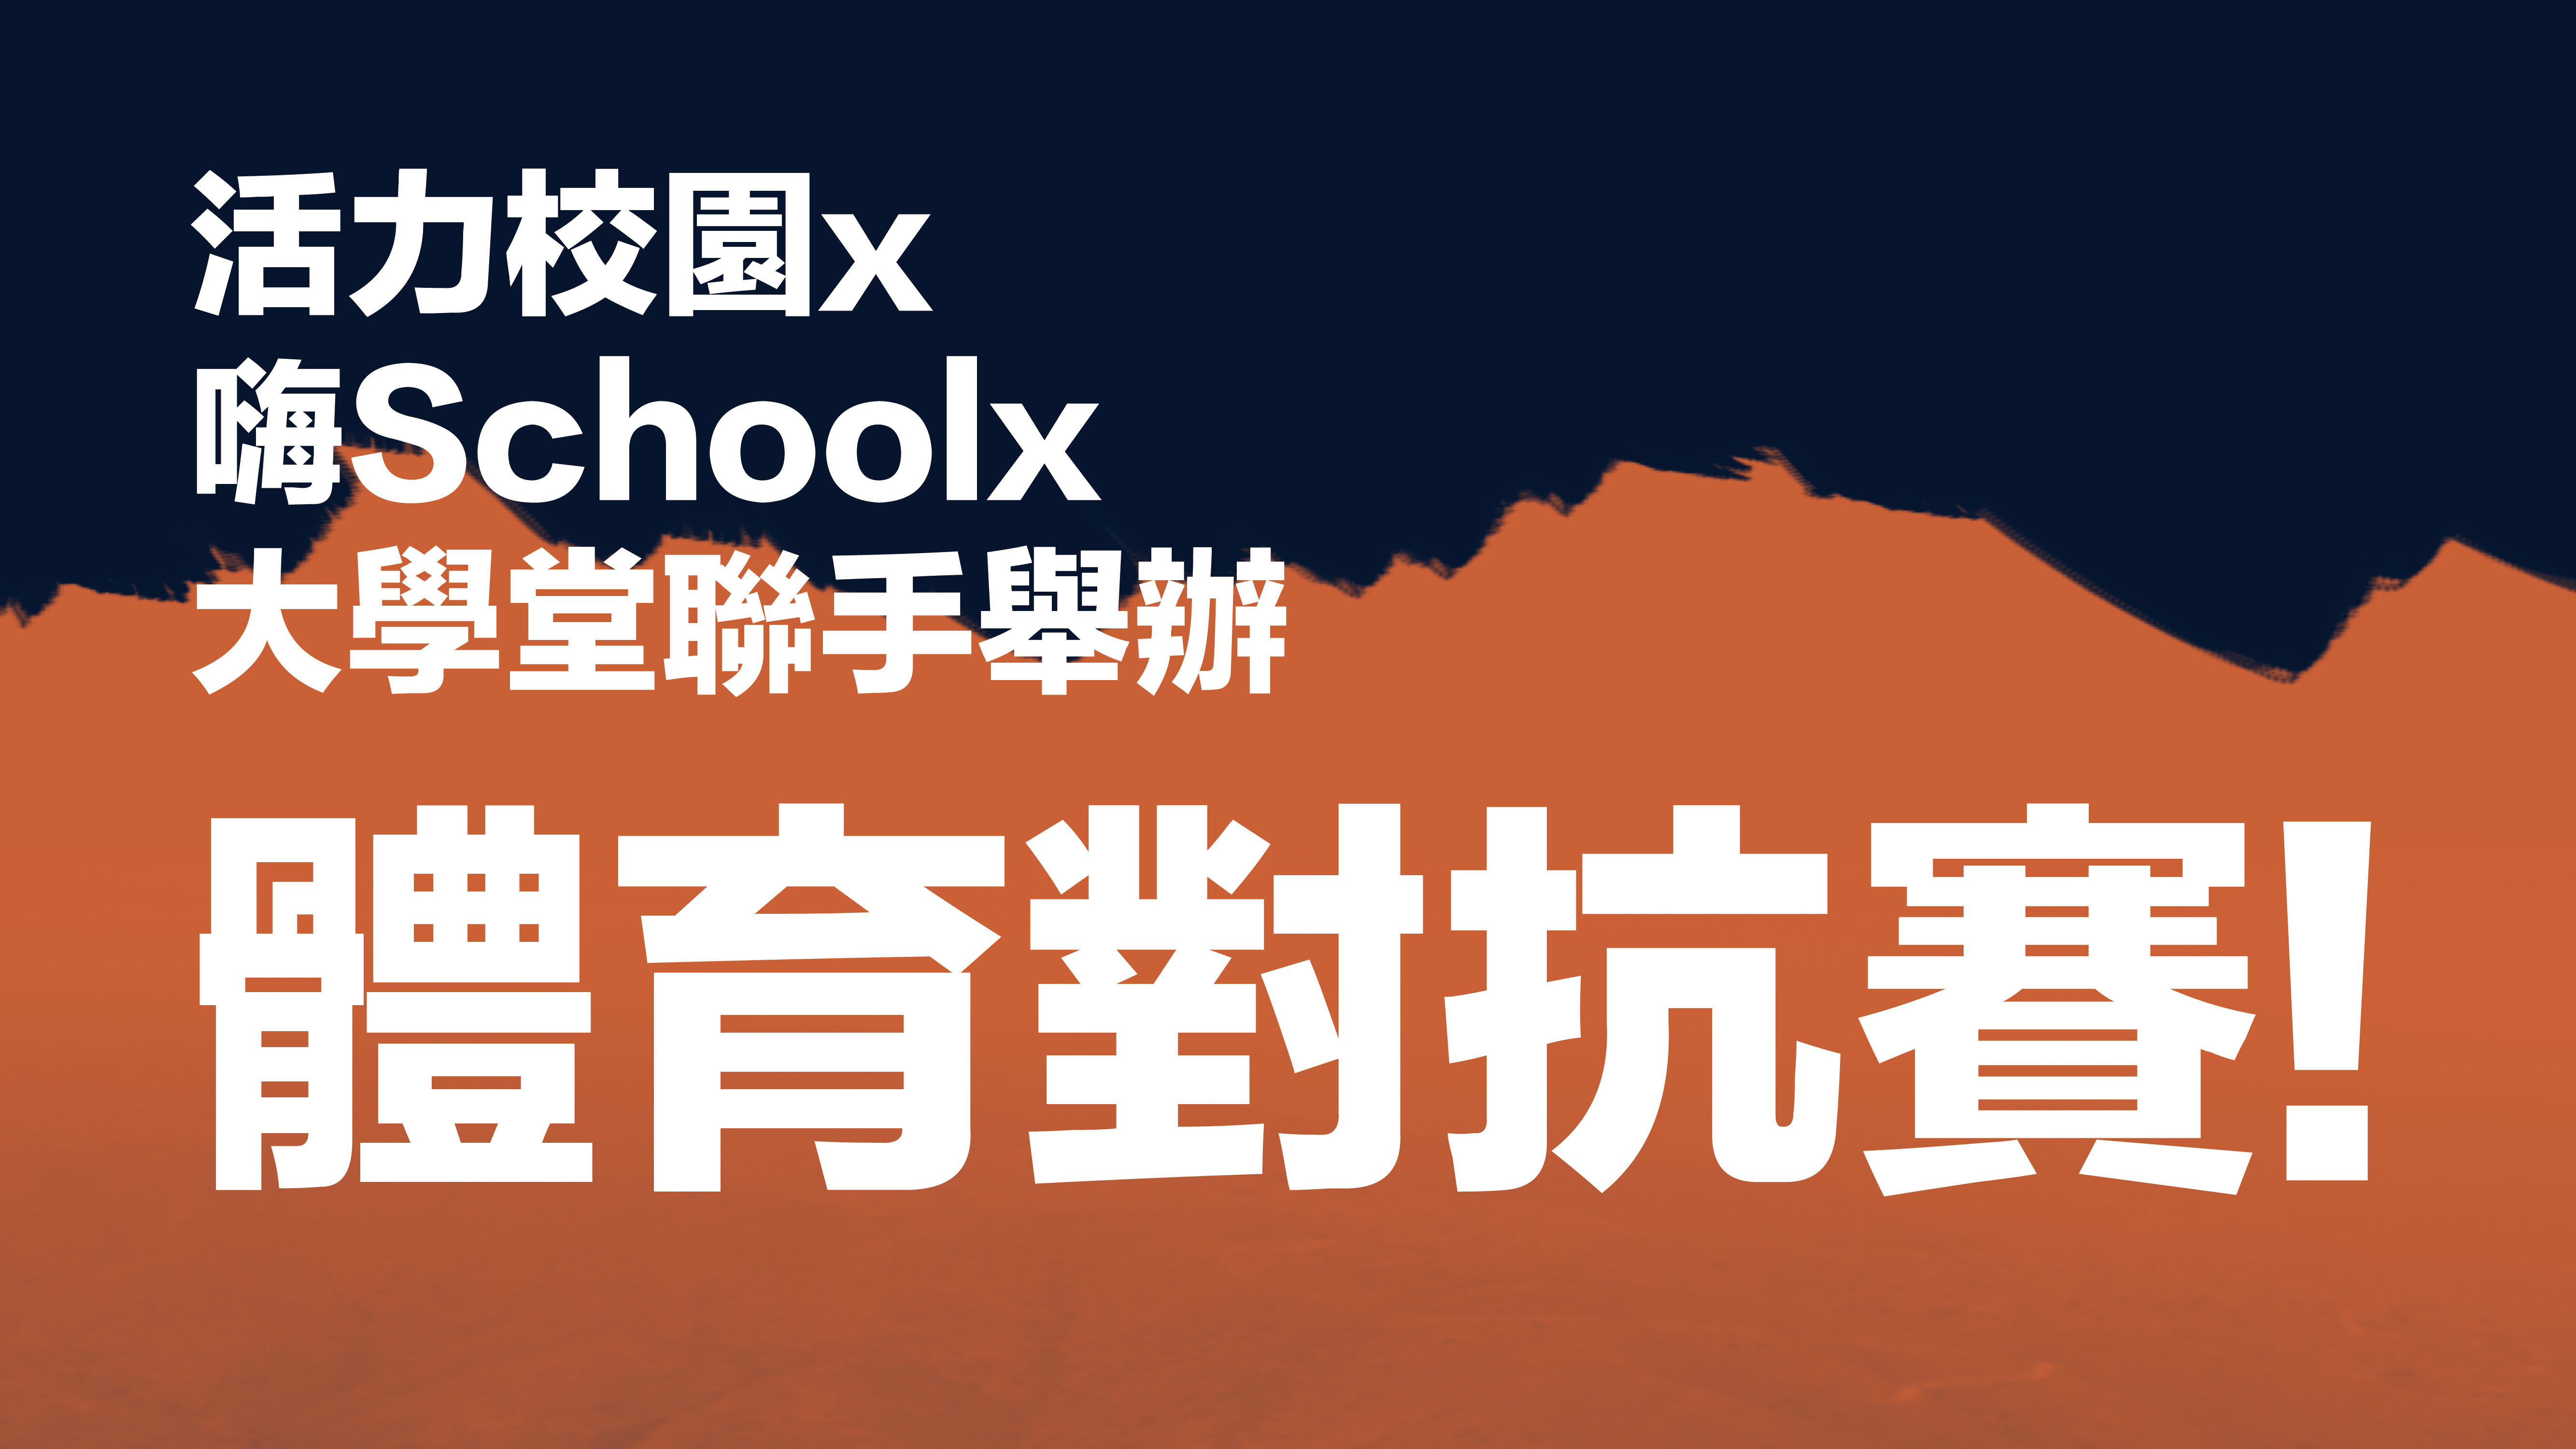 【資訊公告】9/29暴走運動會! 活力校園x嗨Schoolx大學堂聯手舉辦